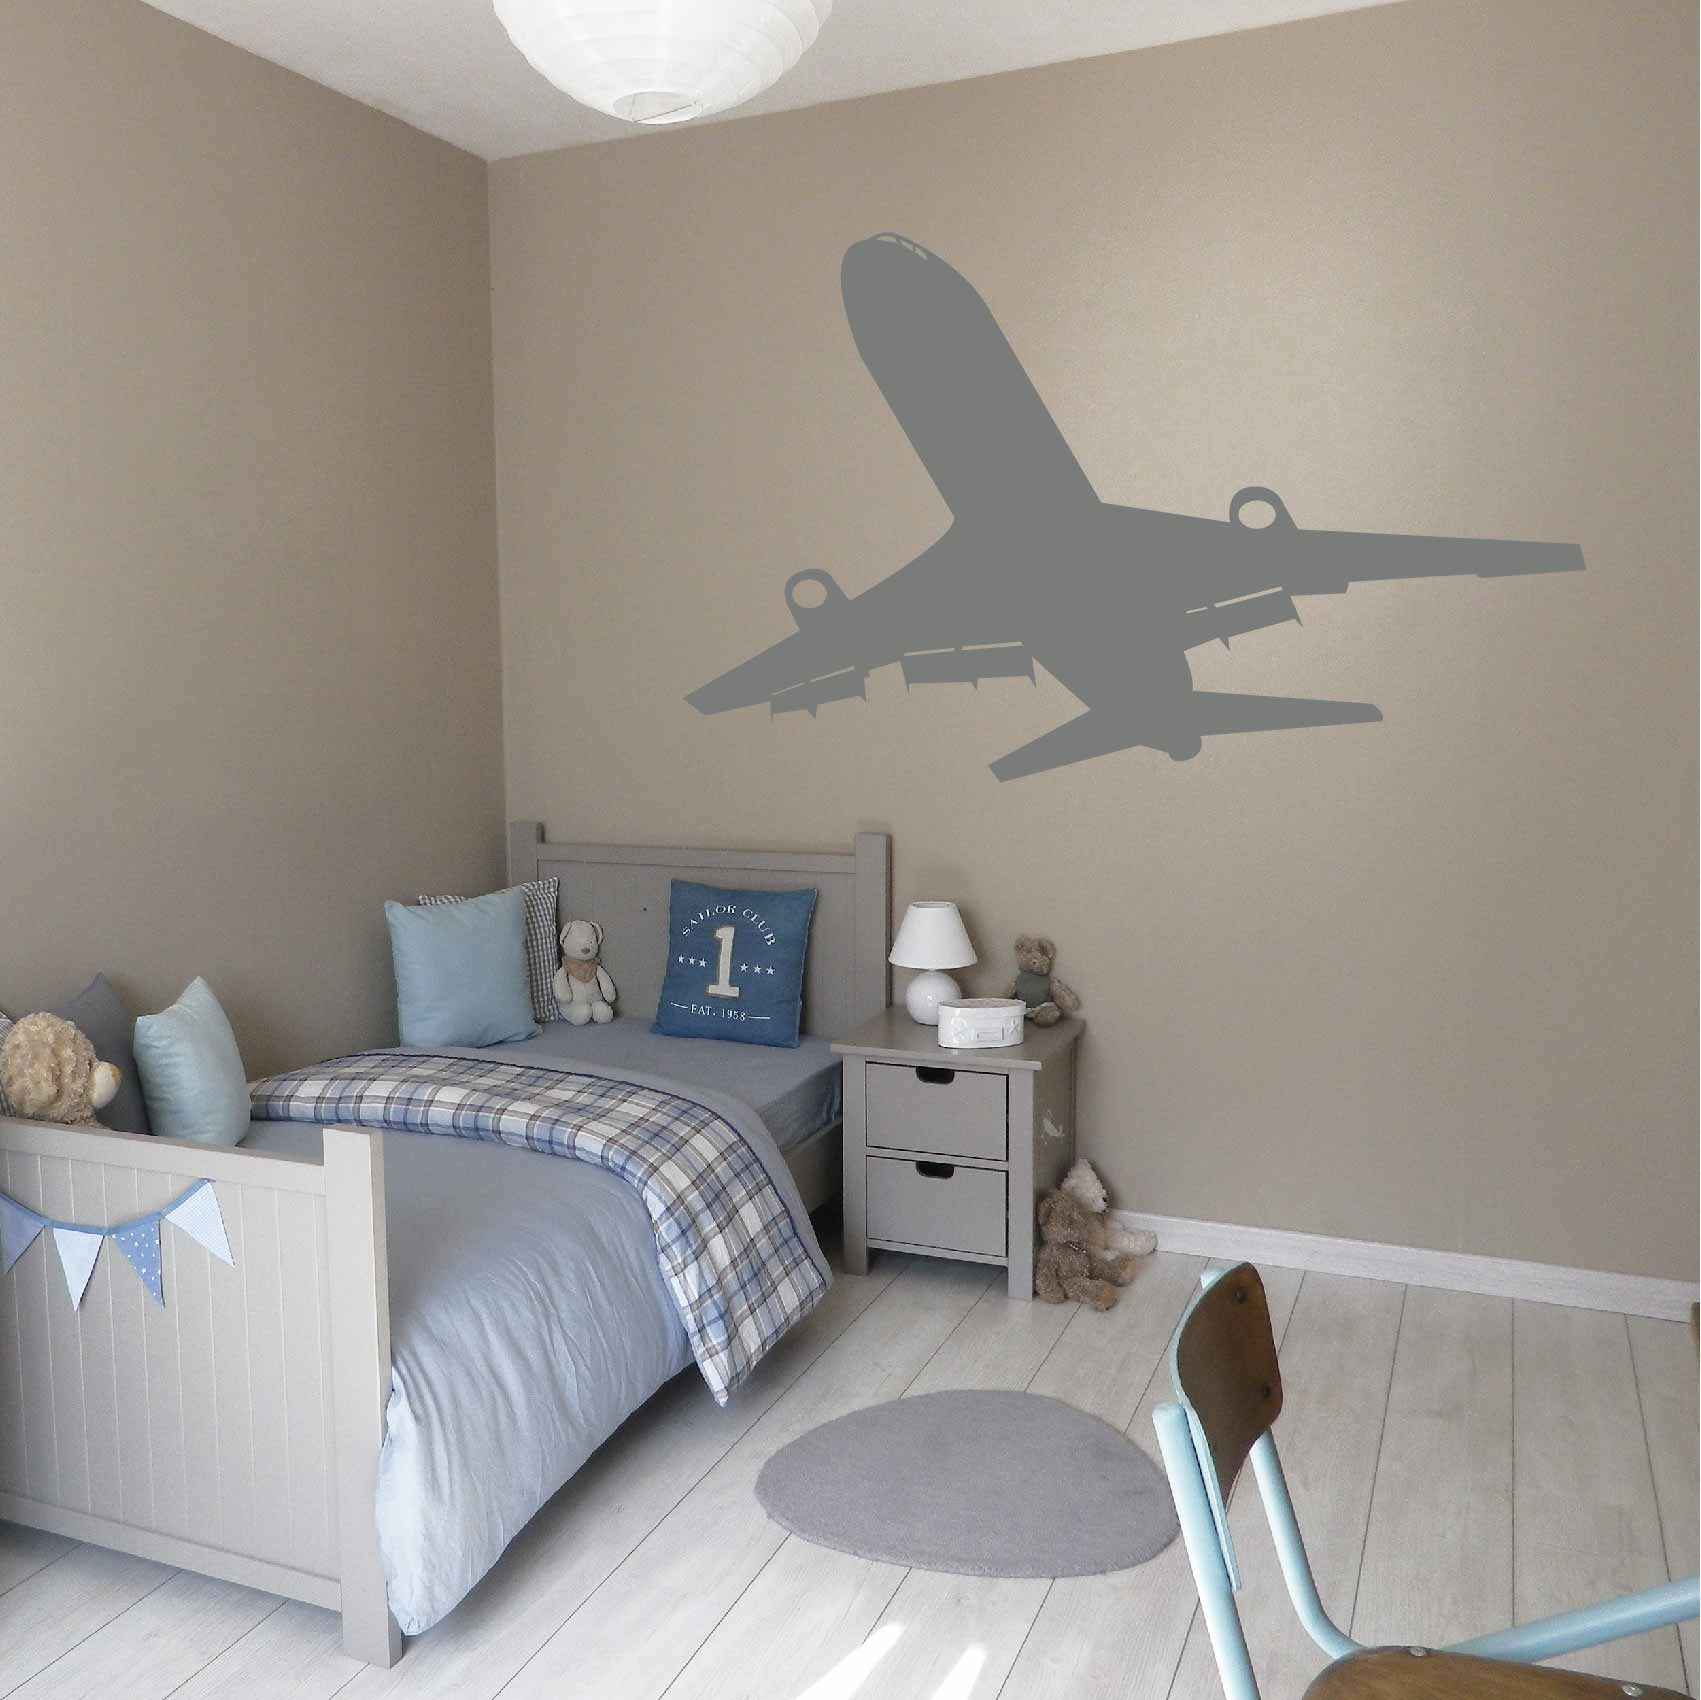 stickers-avion-take-off-ref5avion-autocollant-muraux-avions-sticker-chambre-enfant-aviation-deco-décoration-aerien